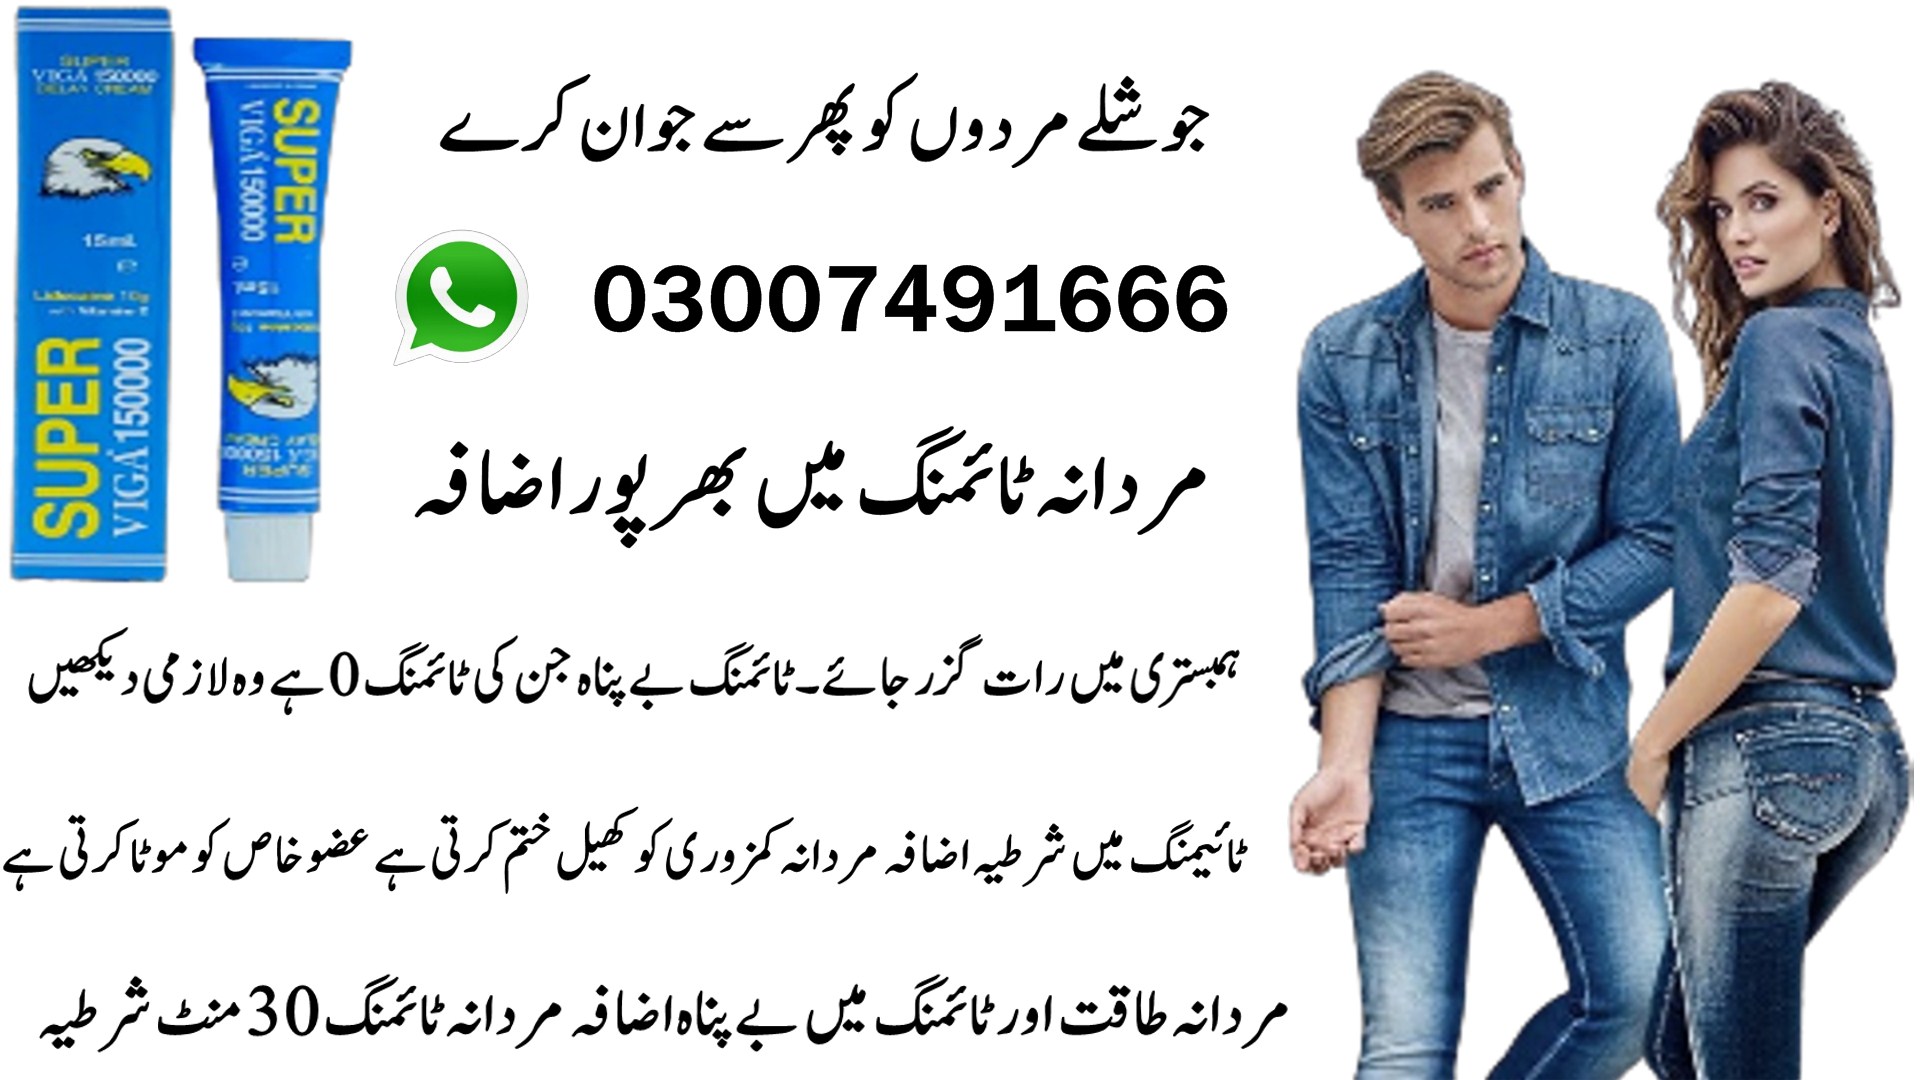 Super Viga 150000 Cream In Pakistan - 03007491666